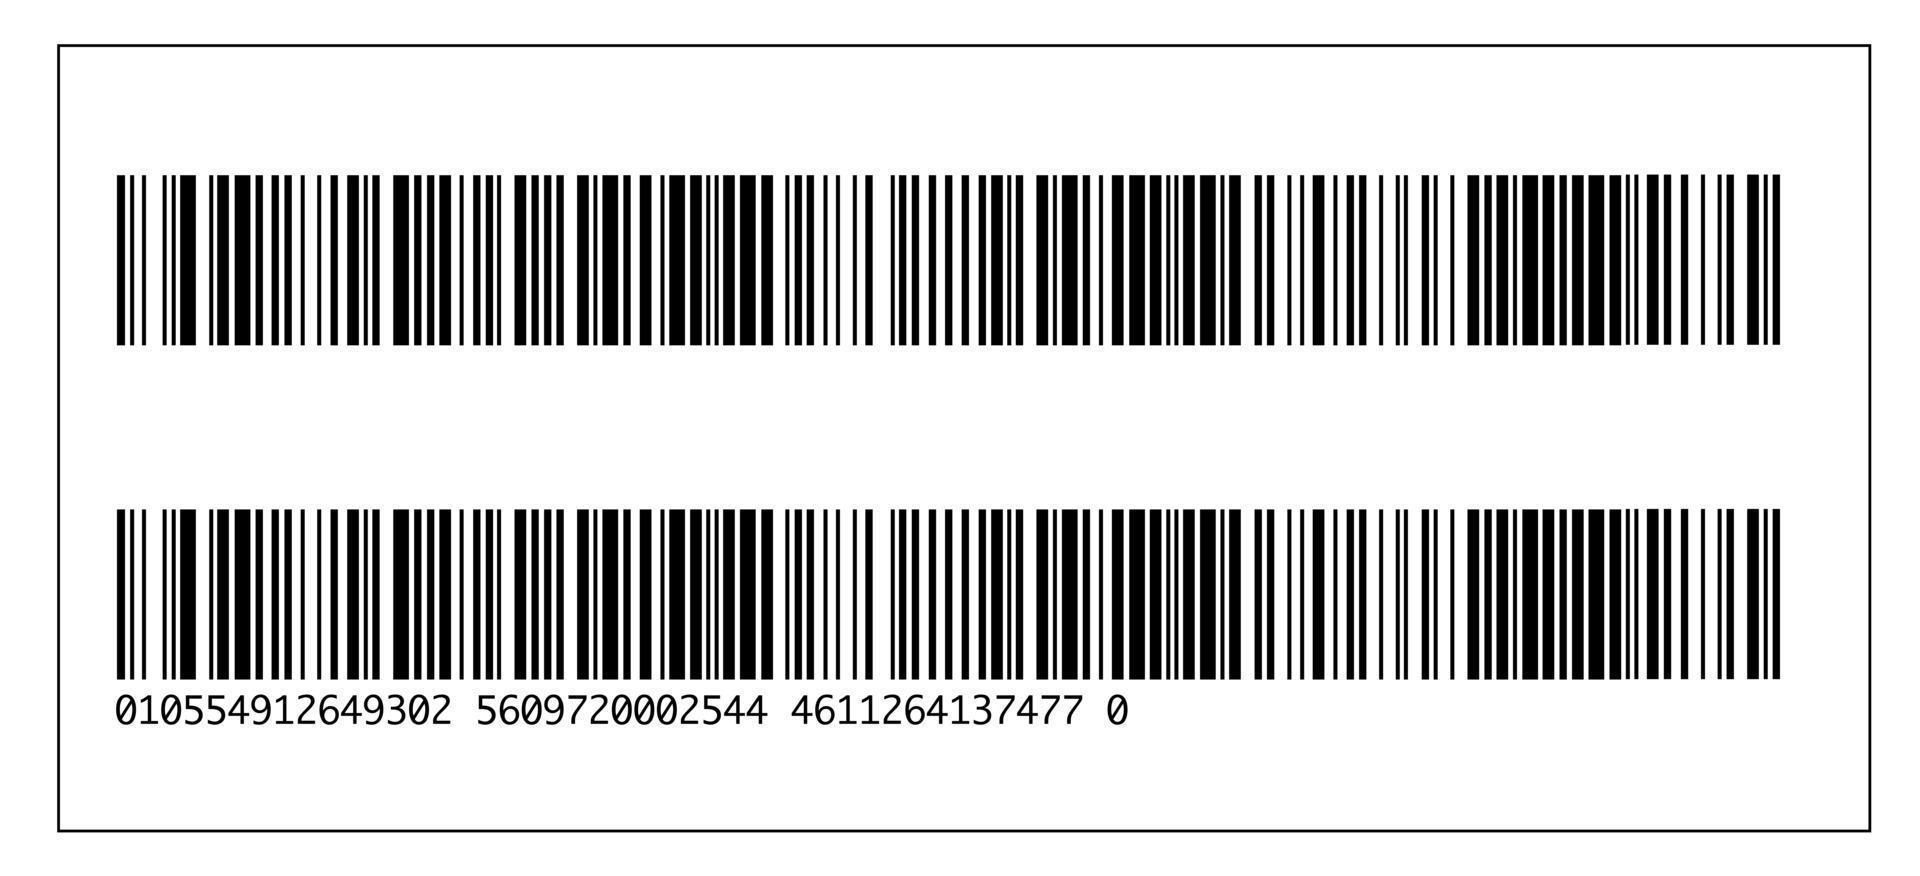 realistische Barcode- und Zahlensymbolvorlage. flache Vektorillustration lokalisiert auf weißem Hintergrund mit Schatten. vektor